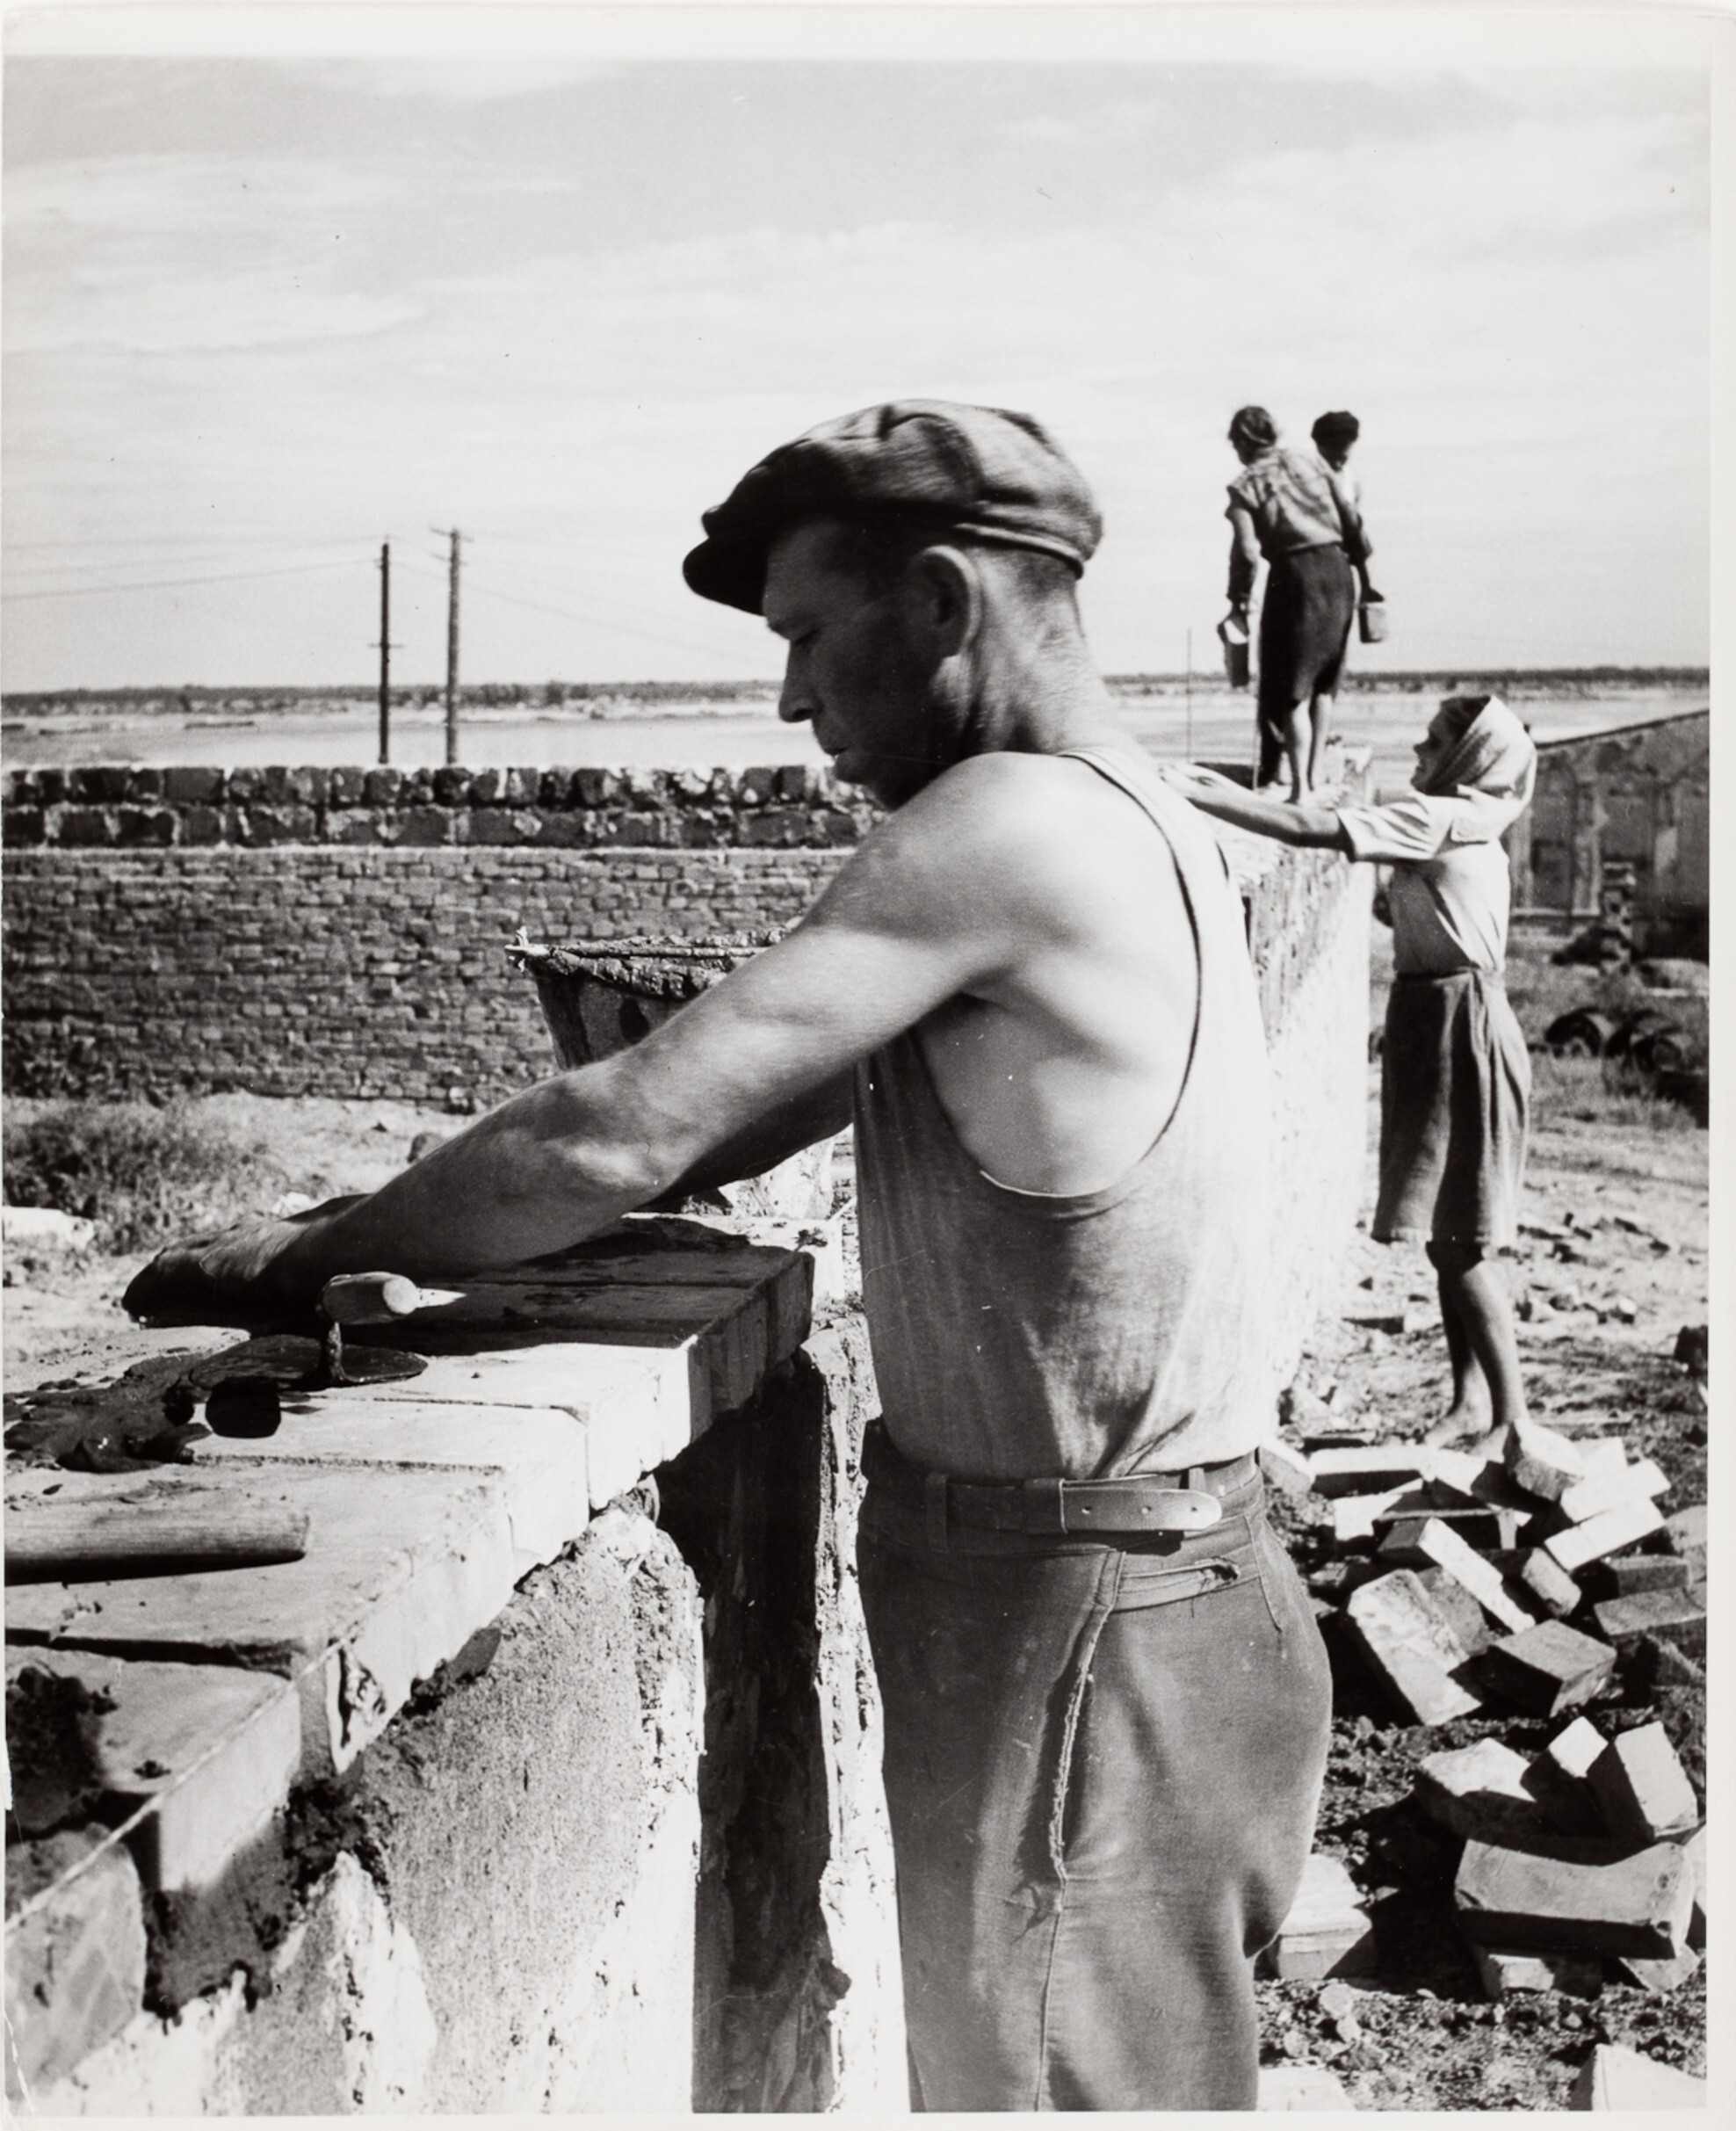 Каменщик строит кирпичную стену, Сталинград, СССР, 1947 год. Фотограф Роберт Капа